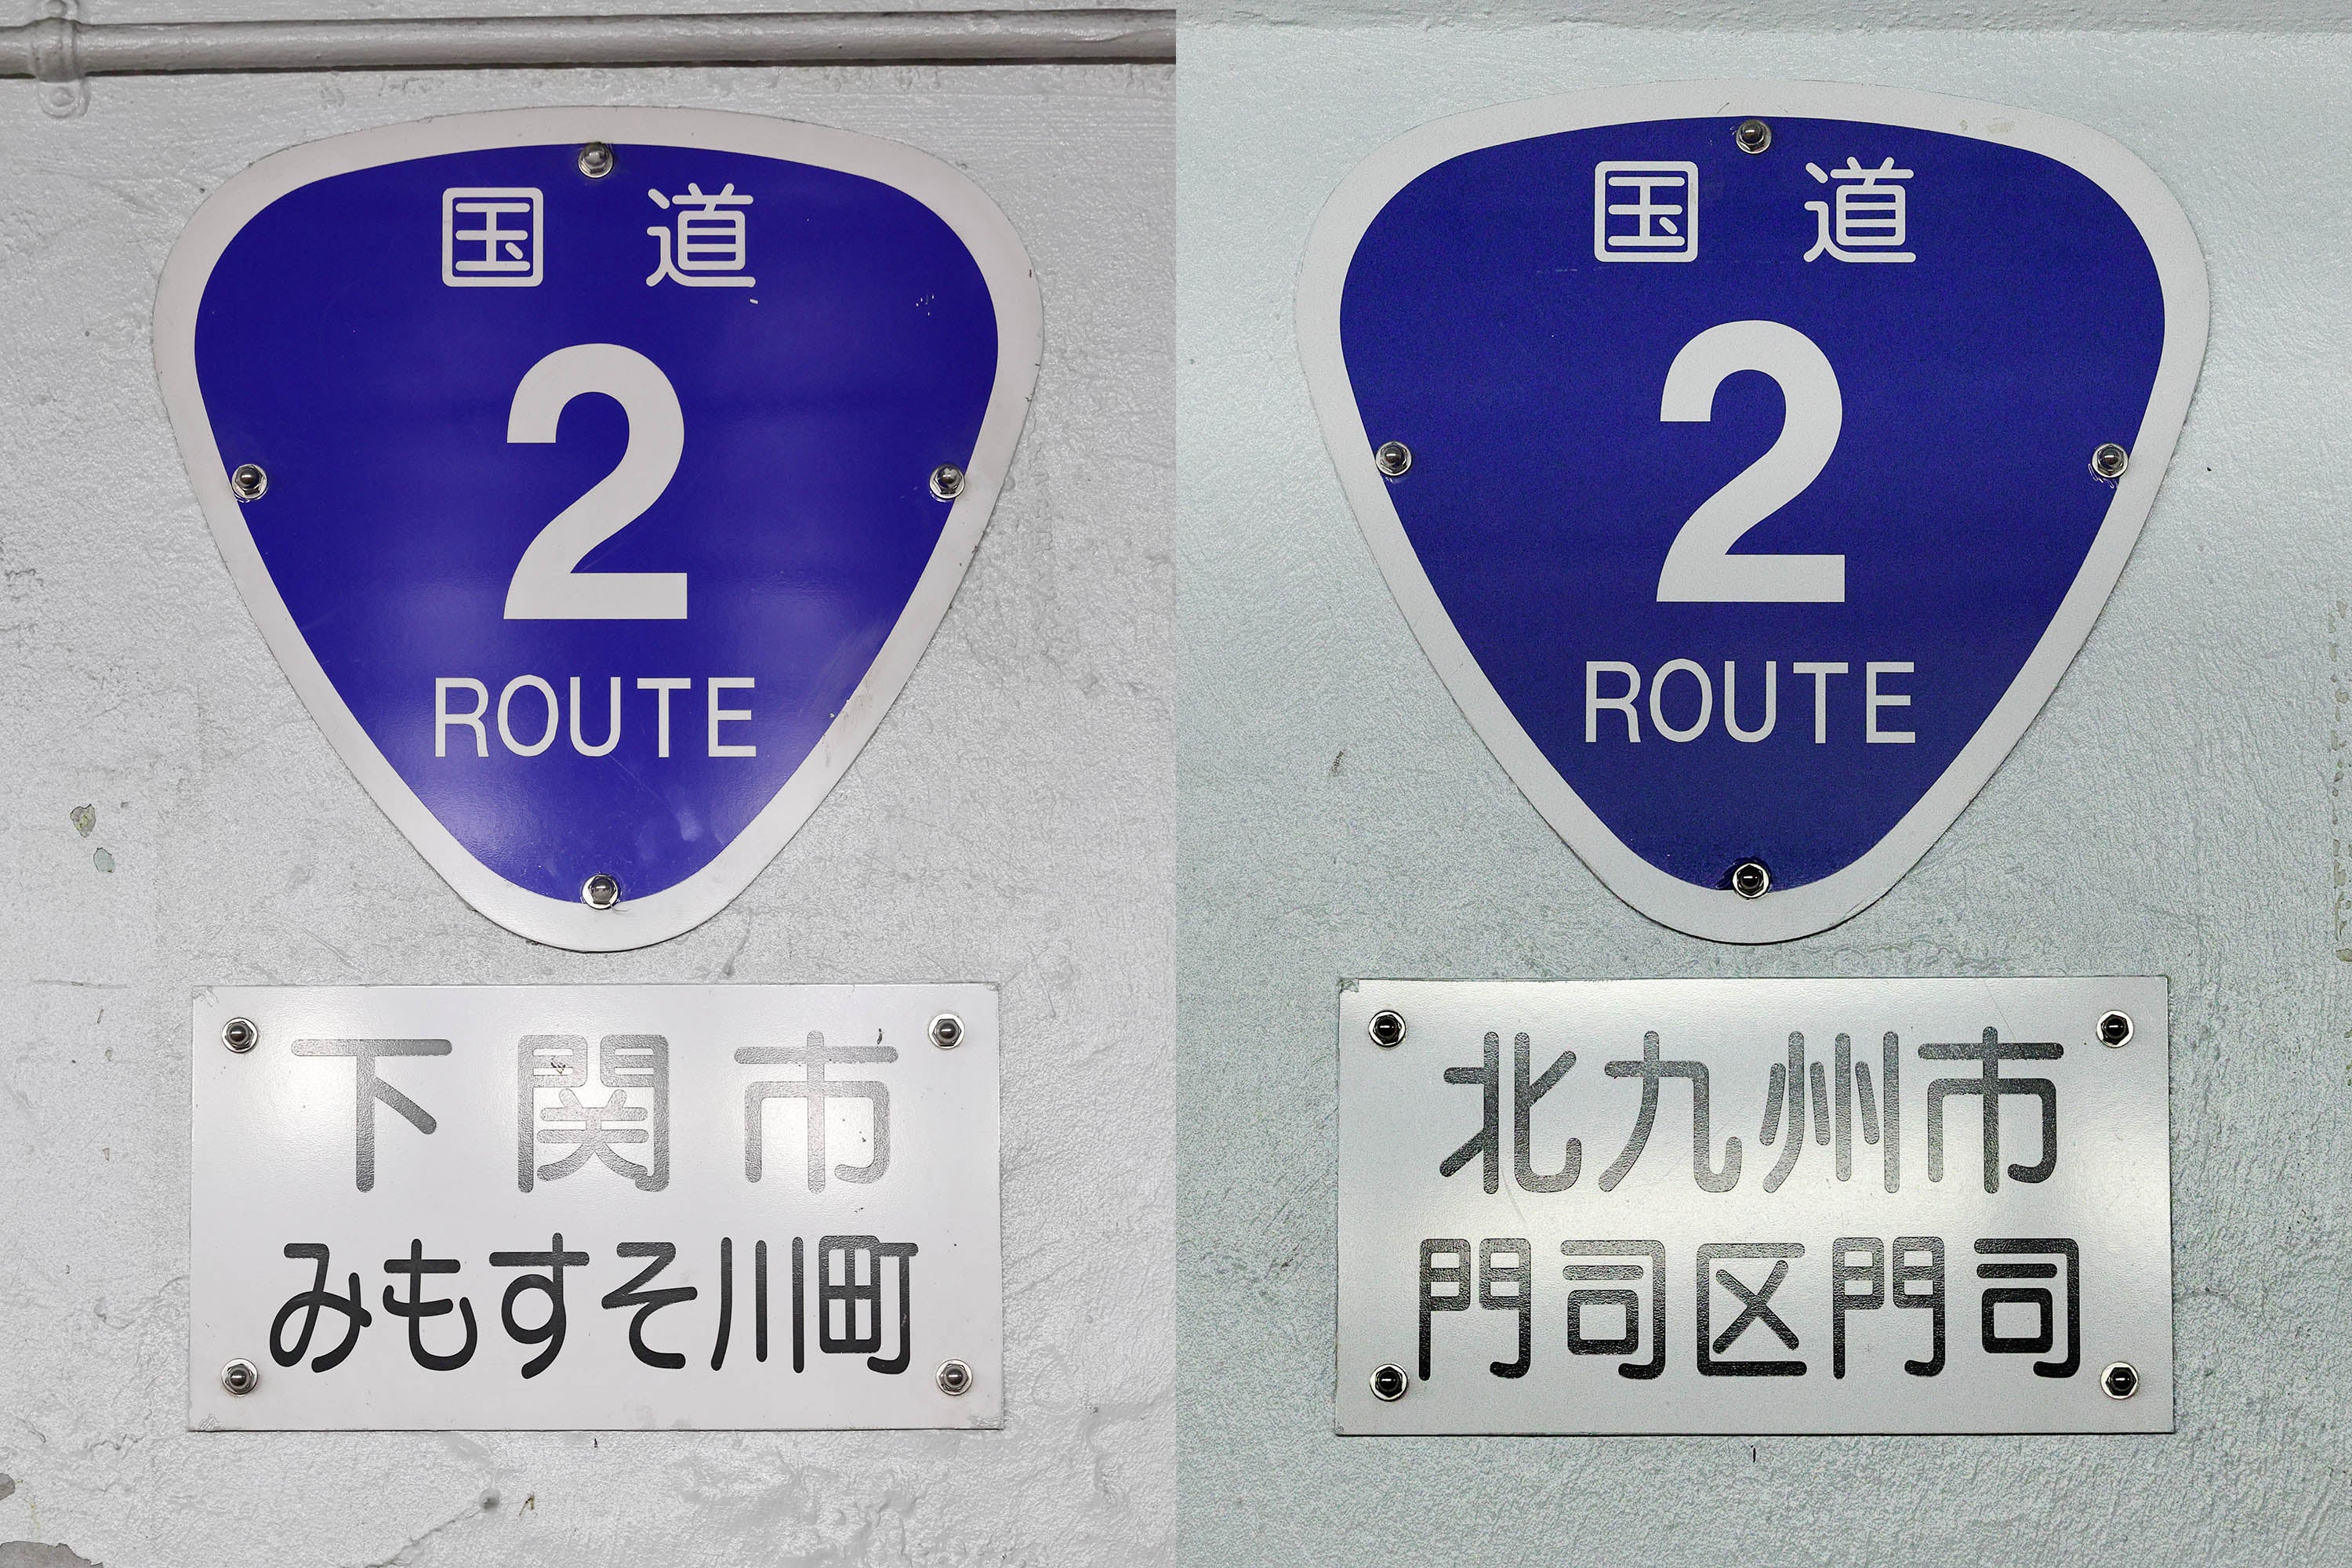 エレベーターホールに設置された国道番号の案内標識。このトンネルは上部の自動車道と同じ国道2号